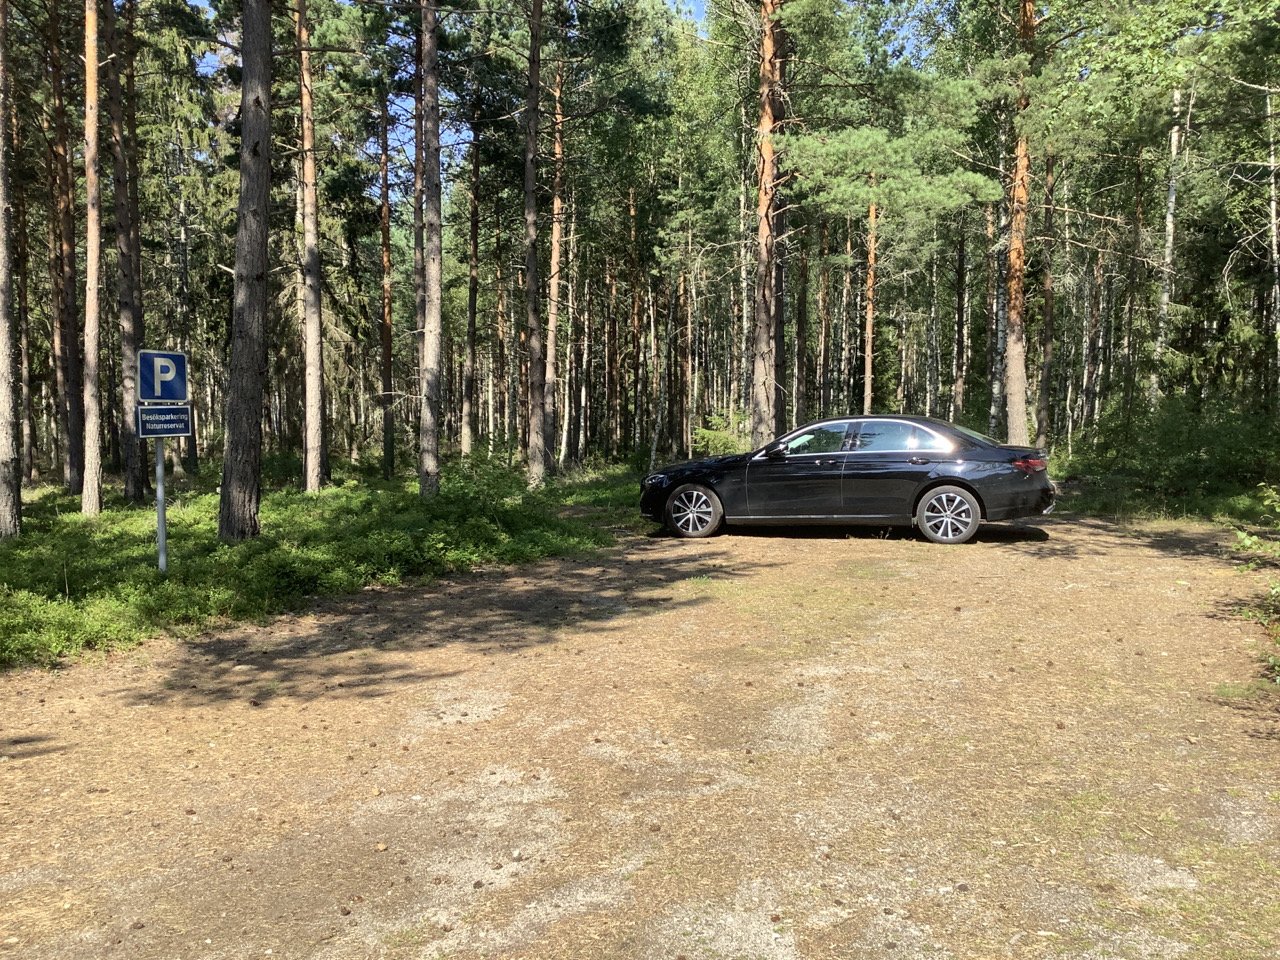 The visitor parking lot at Adelsö Sättra nature reserve.